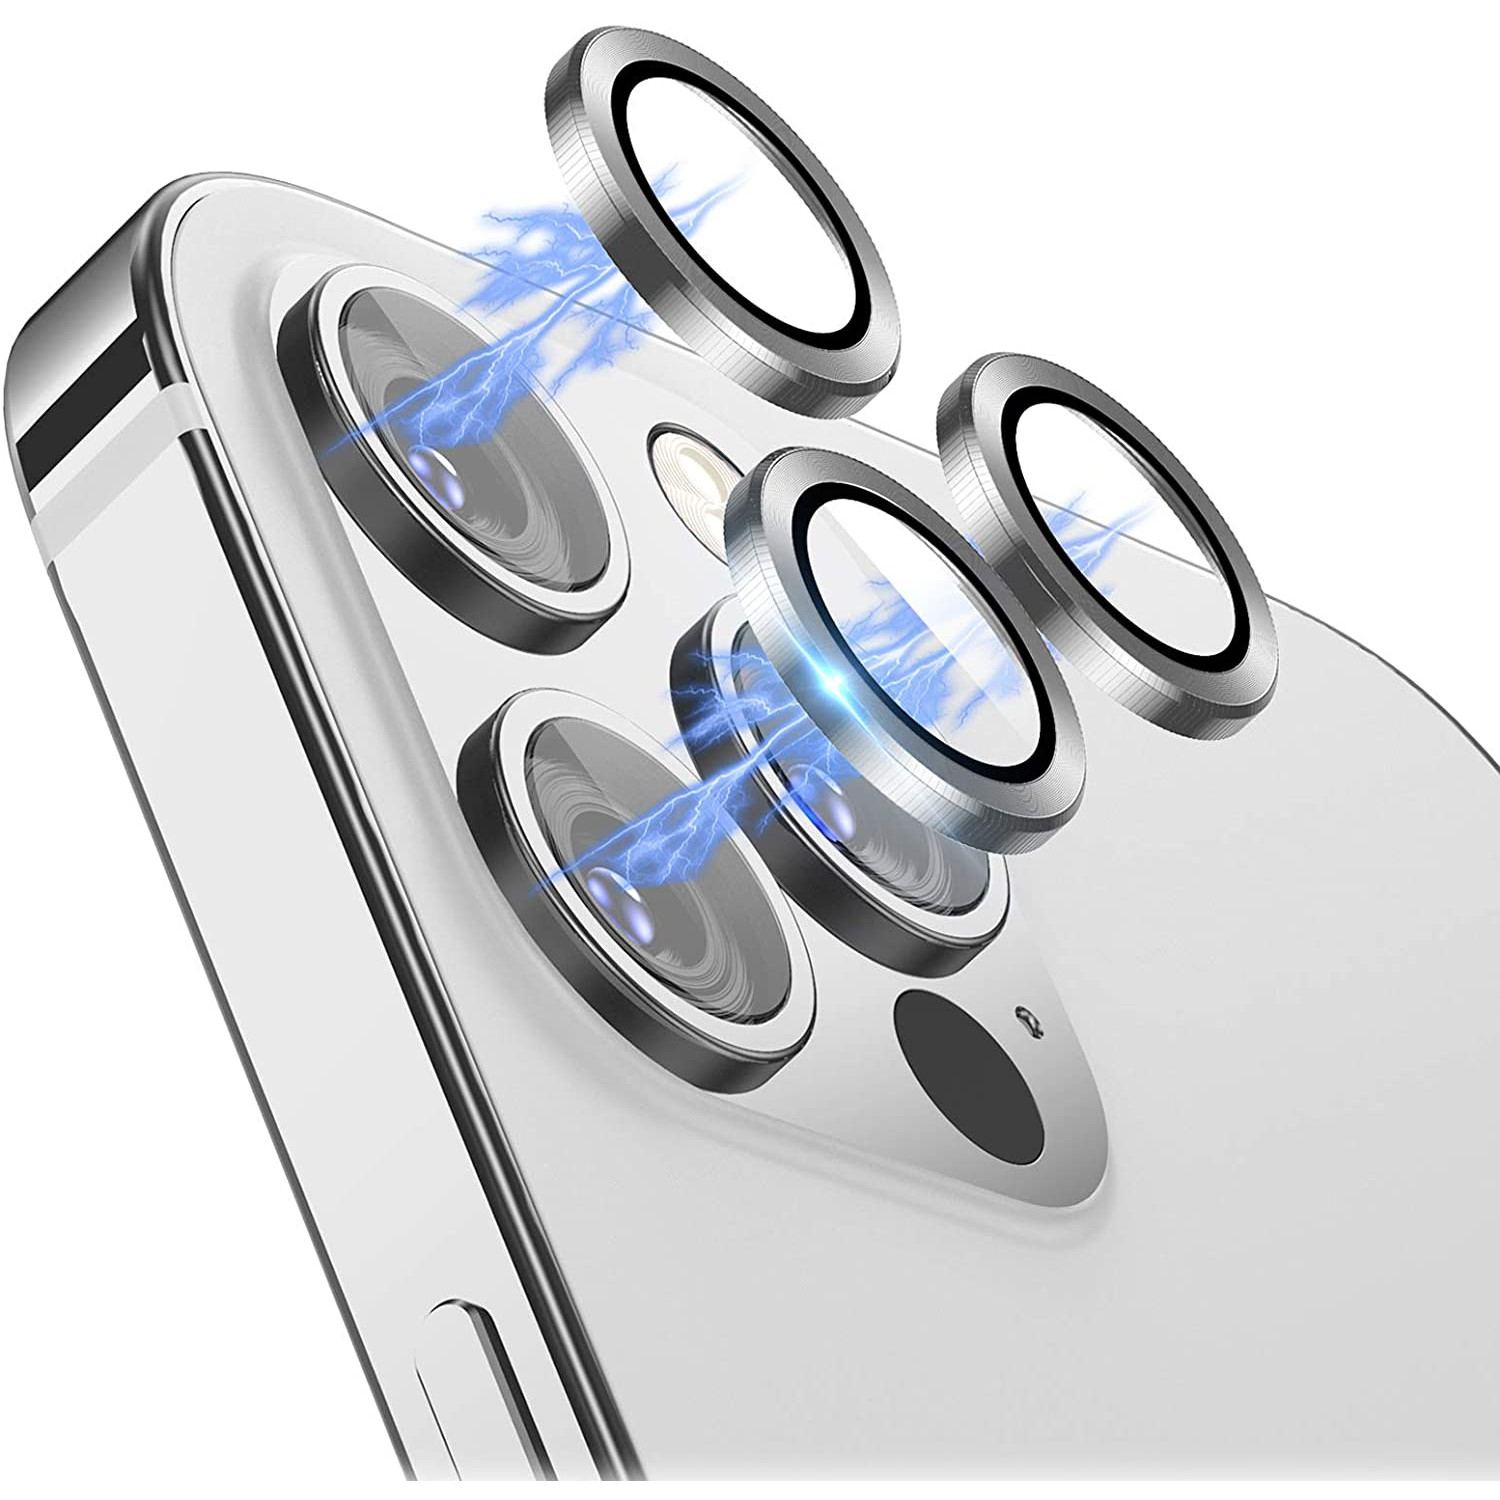 Bộ miếng dán kính cường lực bảo vệ Camera iPhone 12 Pro Max hiệu Wiwu Guard Lens Ring mang  lại khả năng chụp hình sắc nét full HD (độ cứng 9H, chống trầy, chống chụi &amp; vân tay, bảo vệ toàn diện) - hàng nhập khẩu